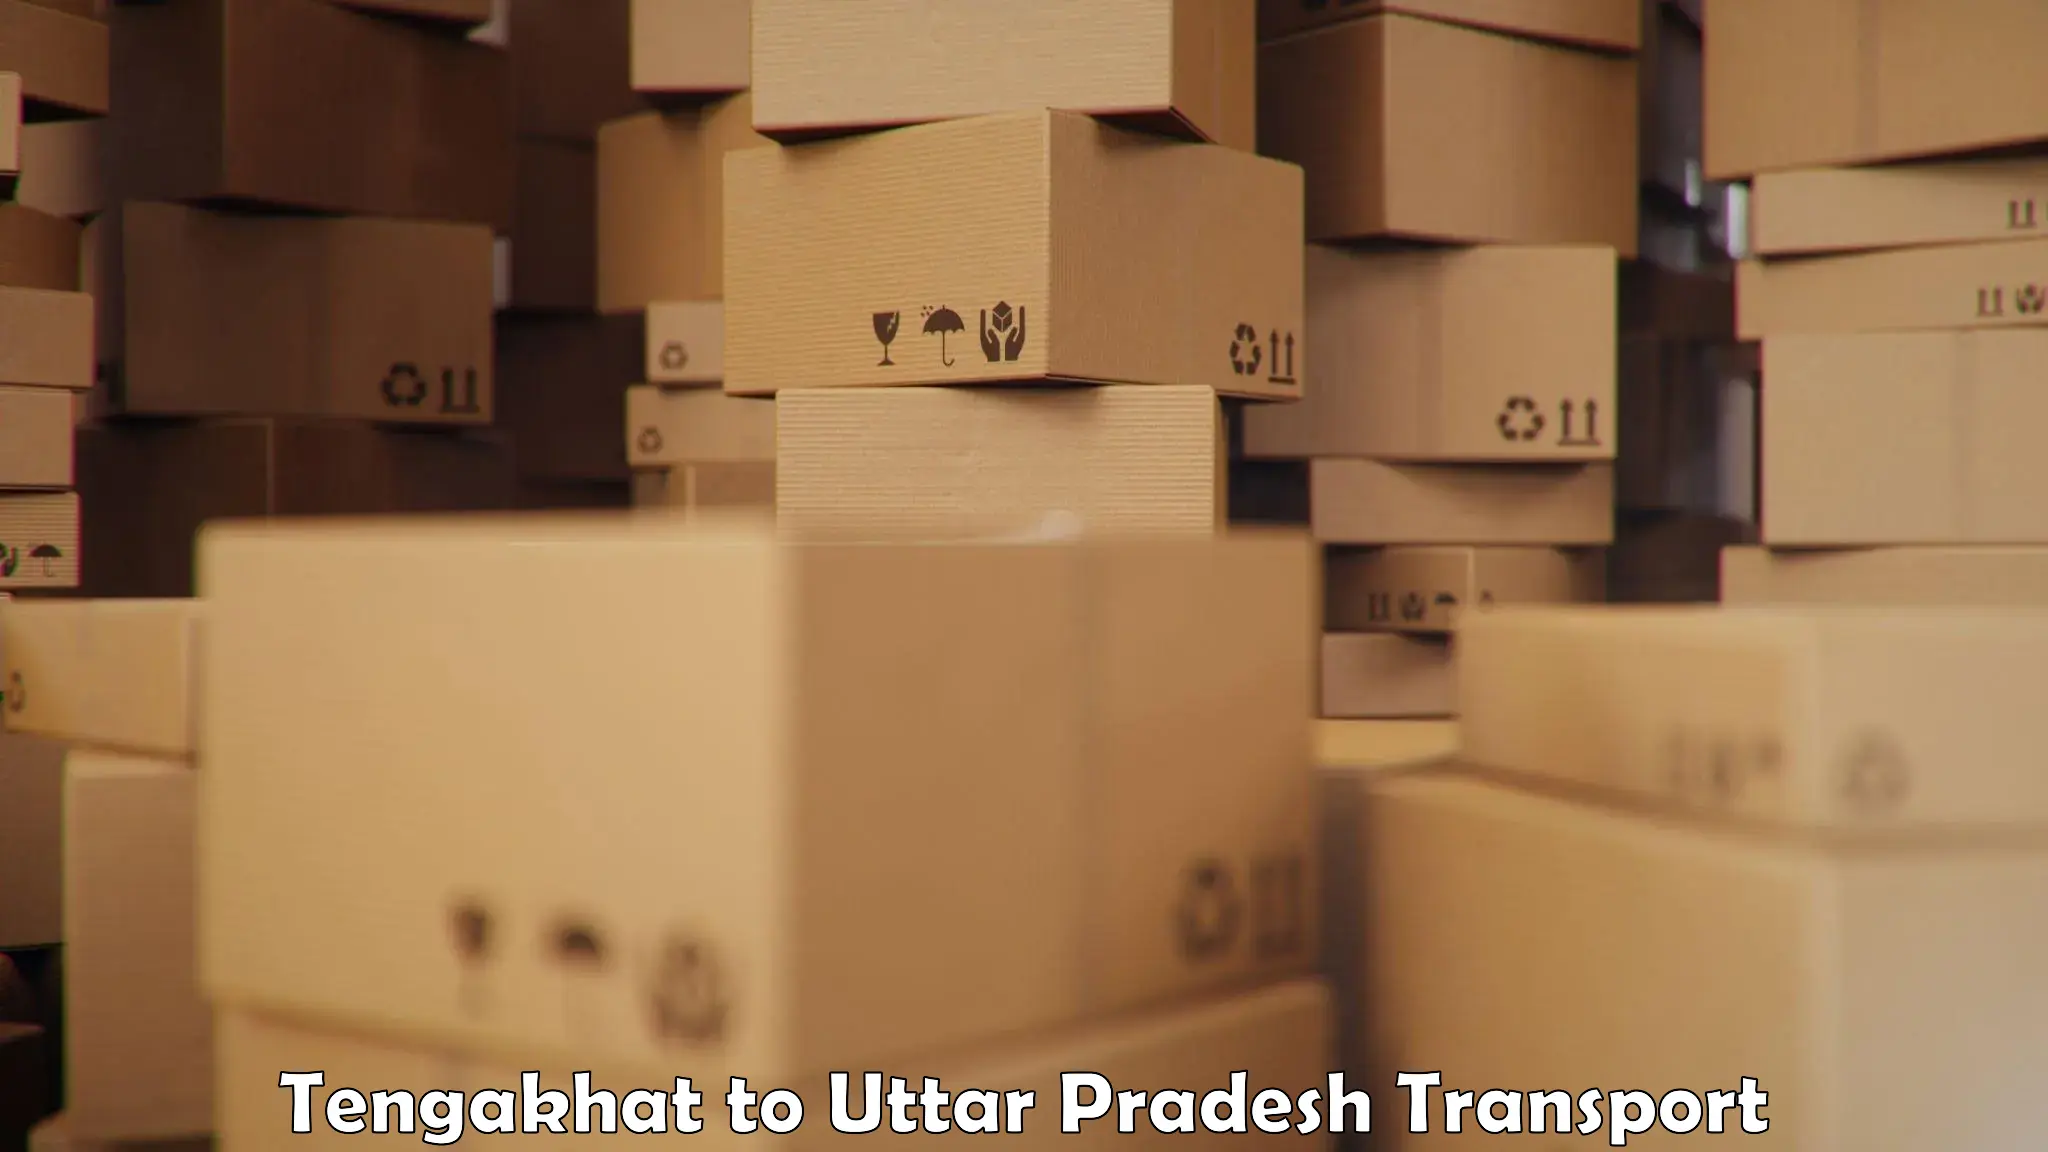 Shipping partner Tengakhat to Kishni